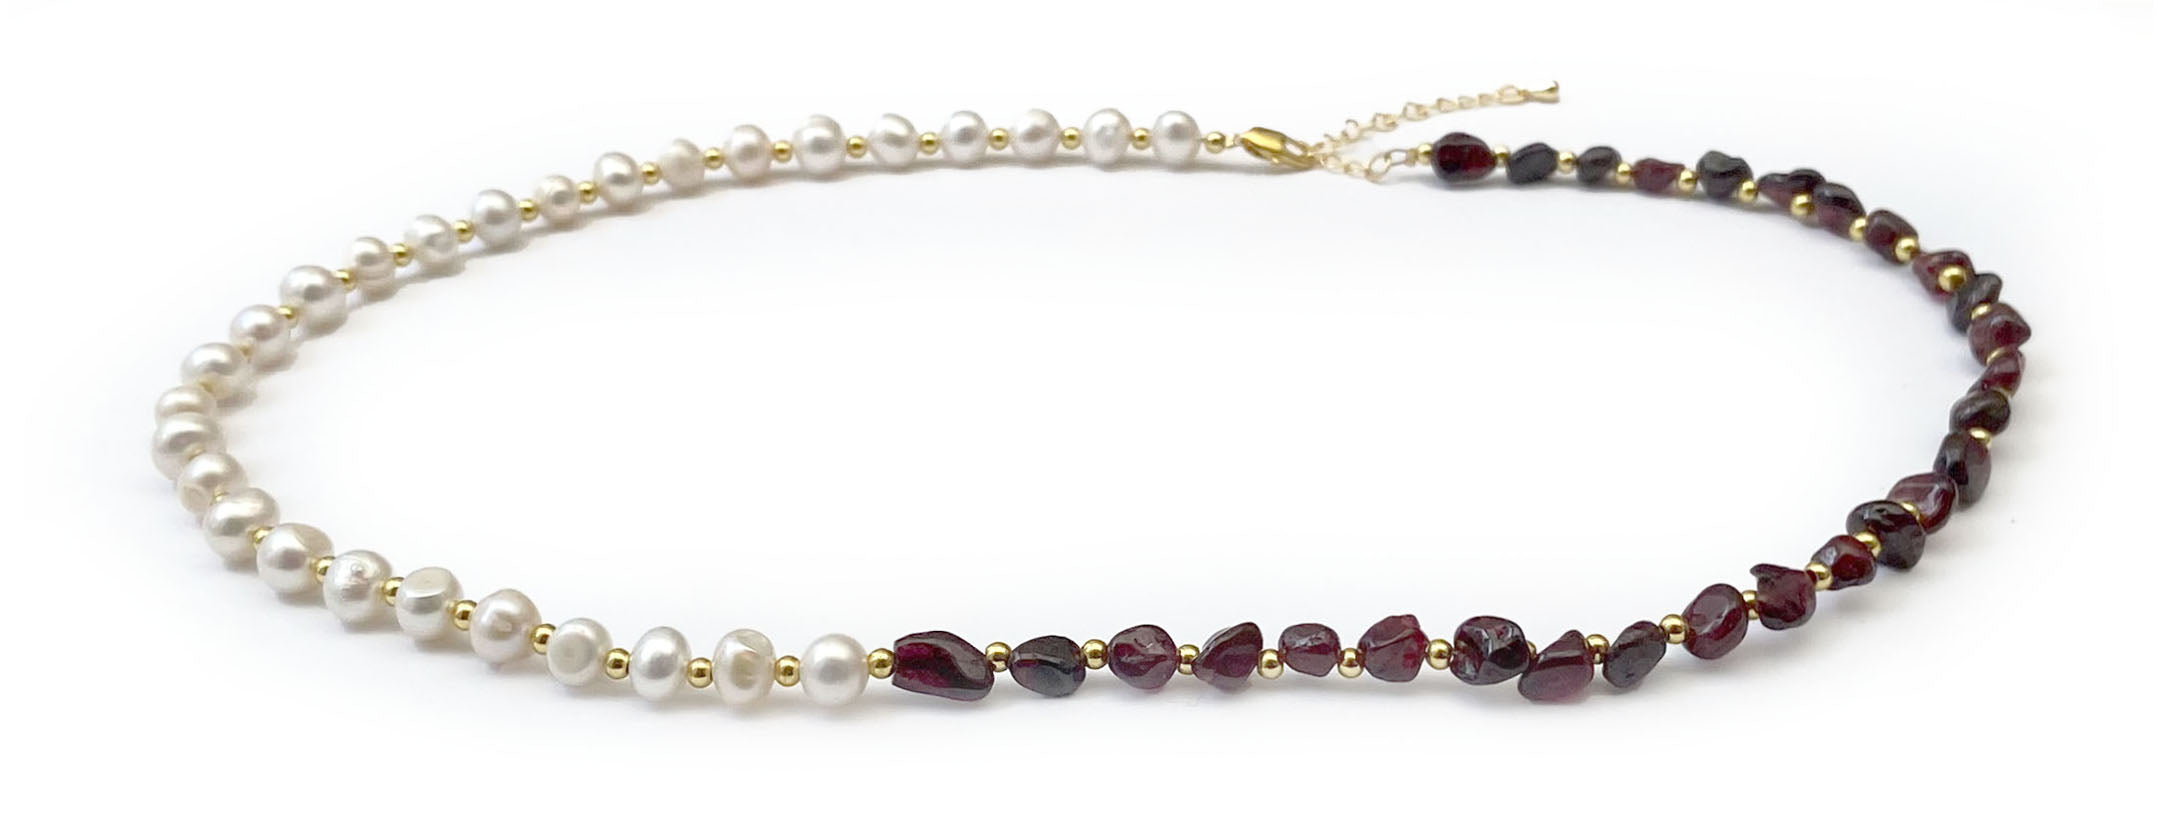 Collier d'Equilibre Vital Perles d'Eau Douce et Pierres Naturelles Grenat - D1360 -